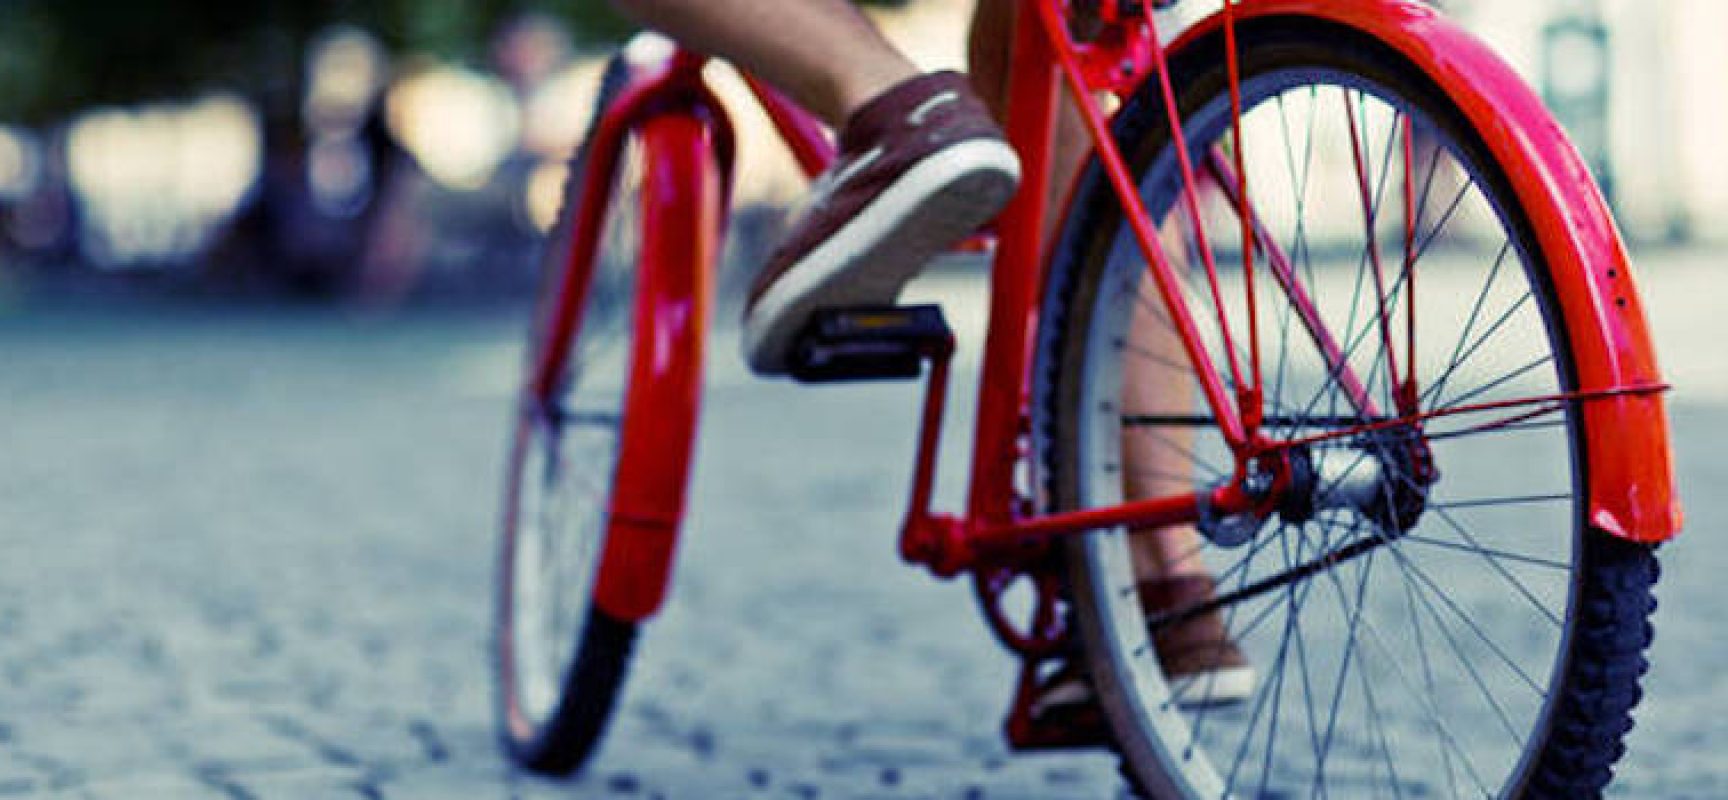 Lo sport e la bicicletta come veicoli di inclusione, pubblicato il bando “Oltre le due ruote”